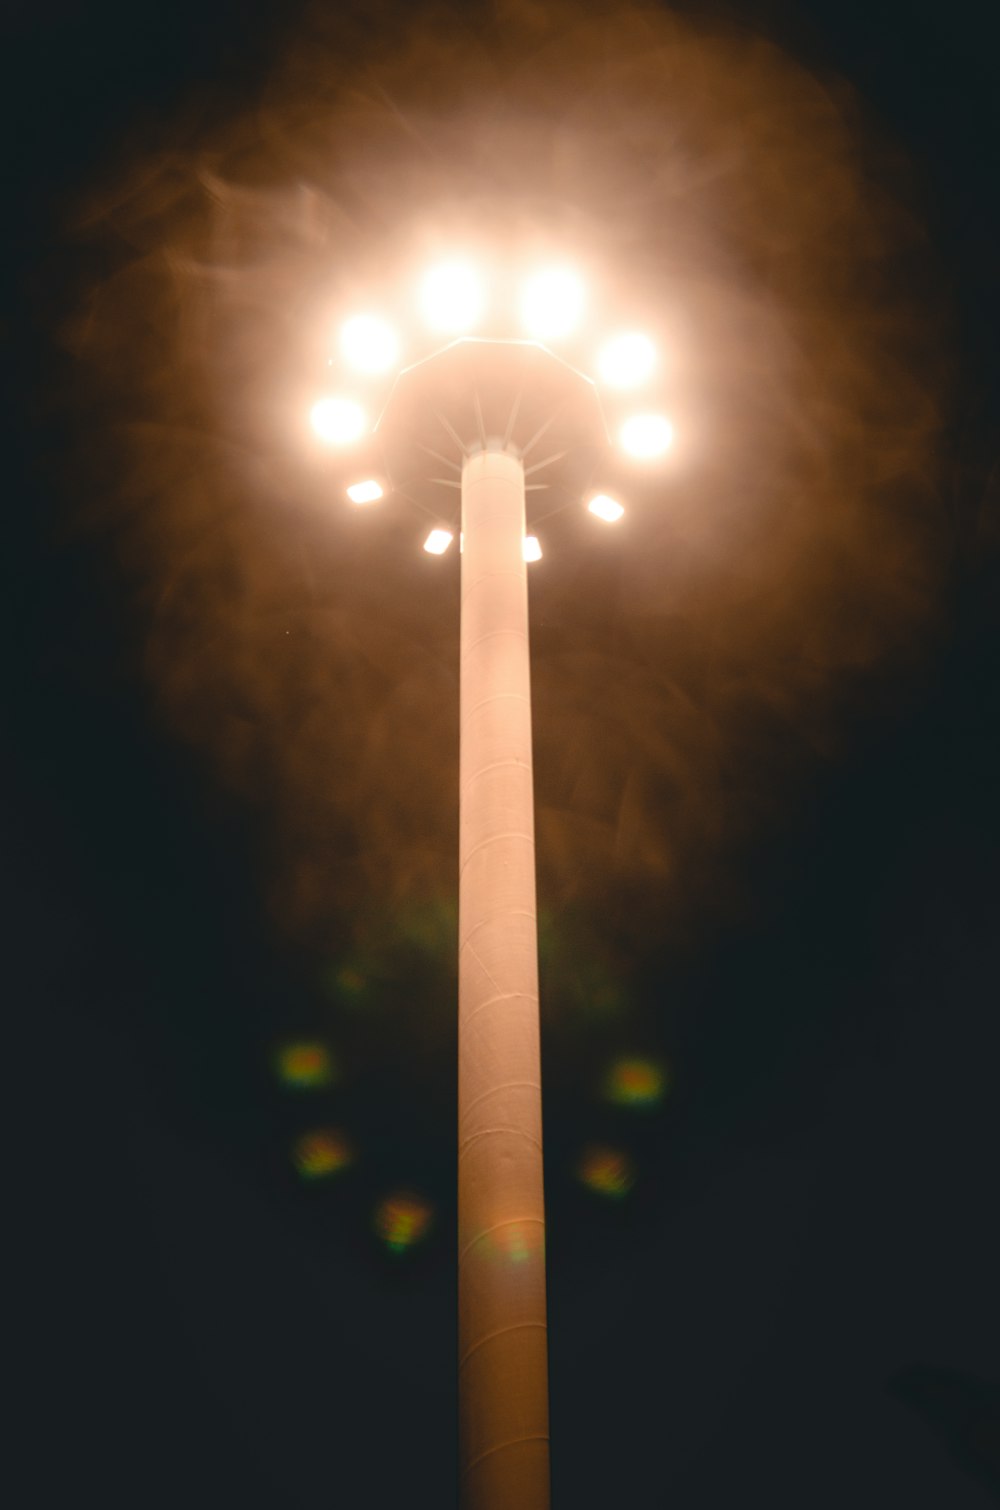 Poteau lumineux blanc pendant la nuit photo – Photo Lampadaire Gratuite sur  Unsplash